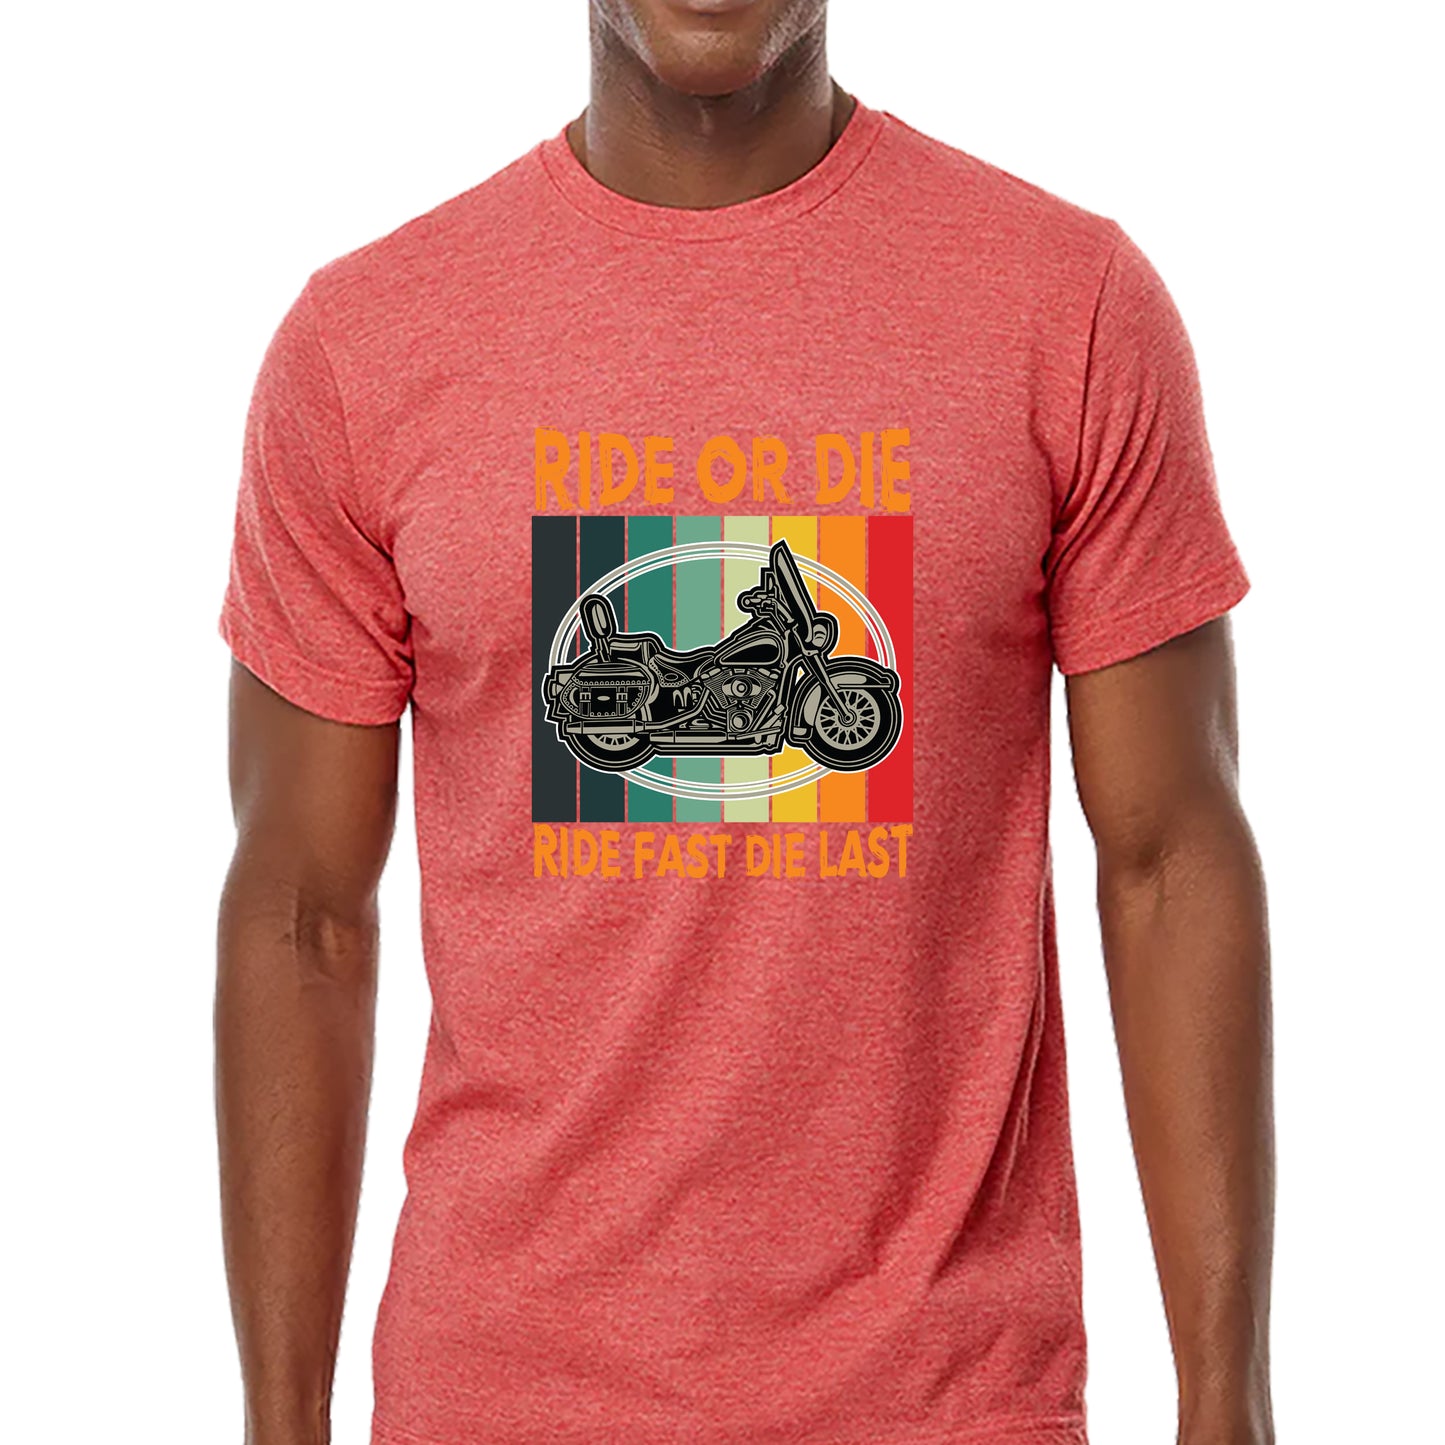 Ride Or Die T-shirt